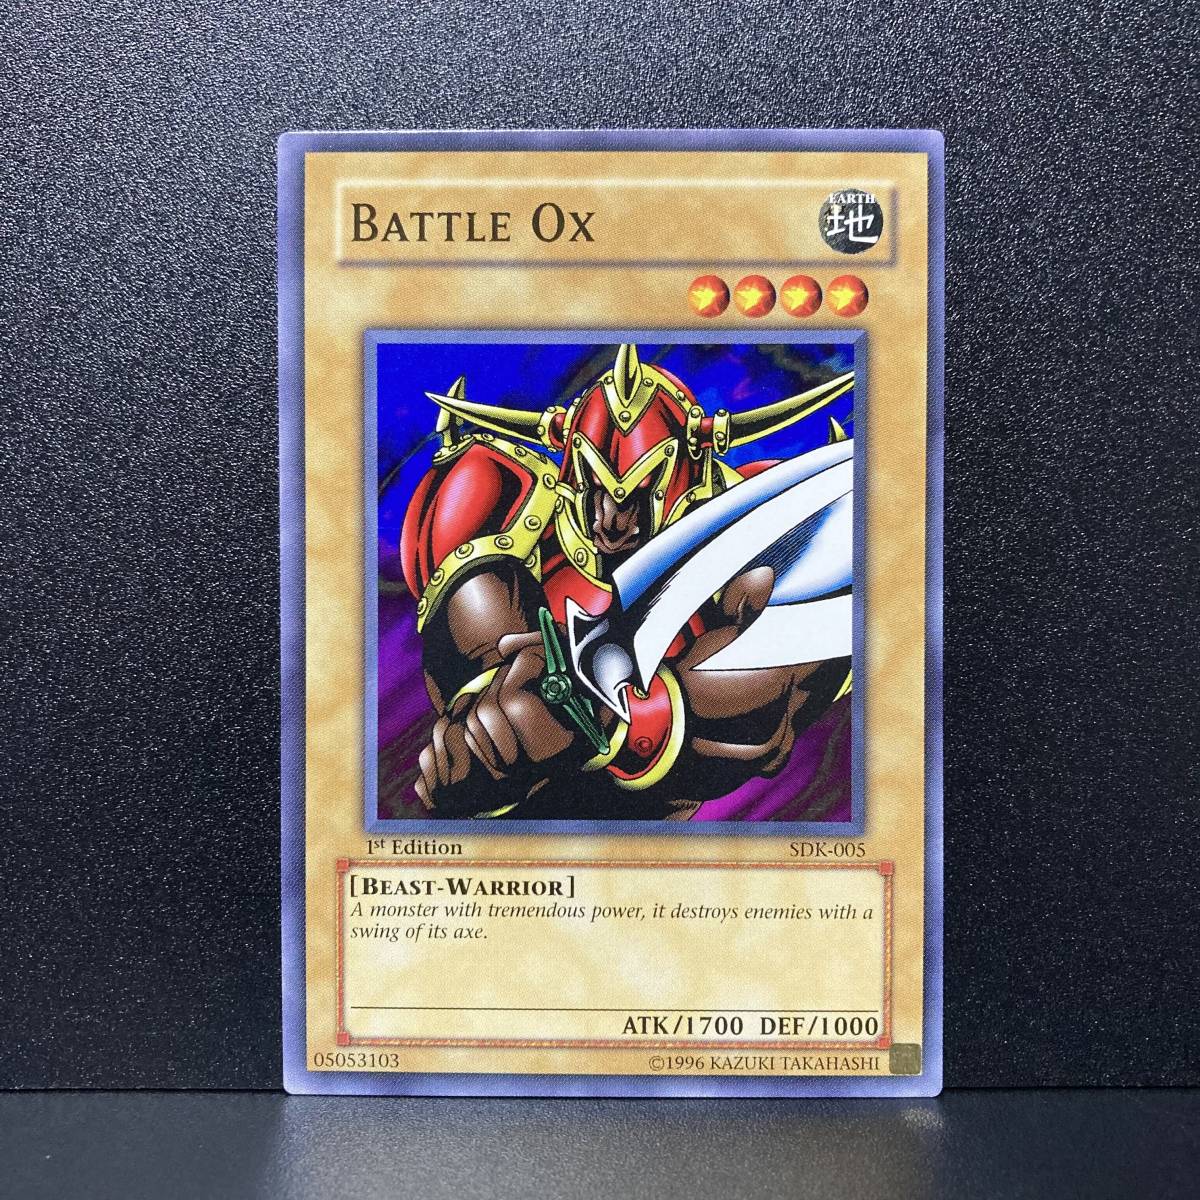 遊戯王 アジア版 SDK-005 Battle Ox/ミノタウルス ノーマル 1st　Edition